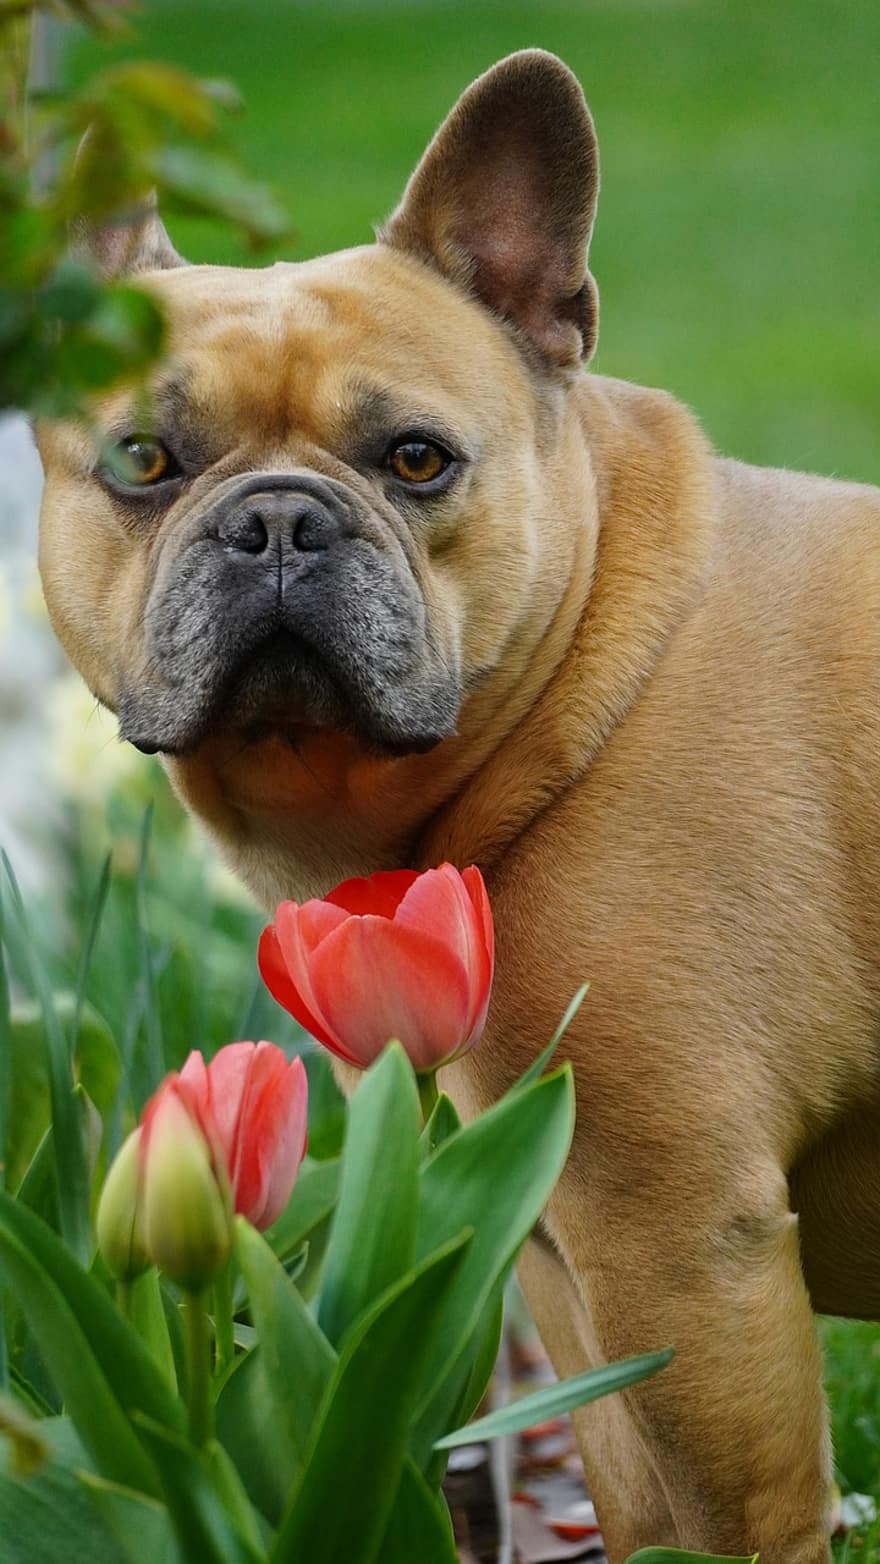 fransk bulldog, trädgård, tulpaner, hund, vår, tamdjur, djur-, natur, landskap, bakgård, sällskapsdjur